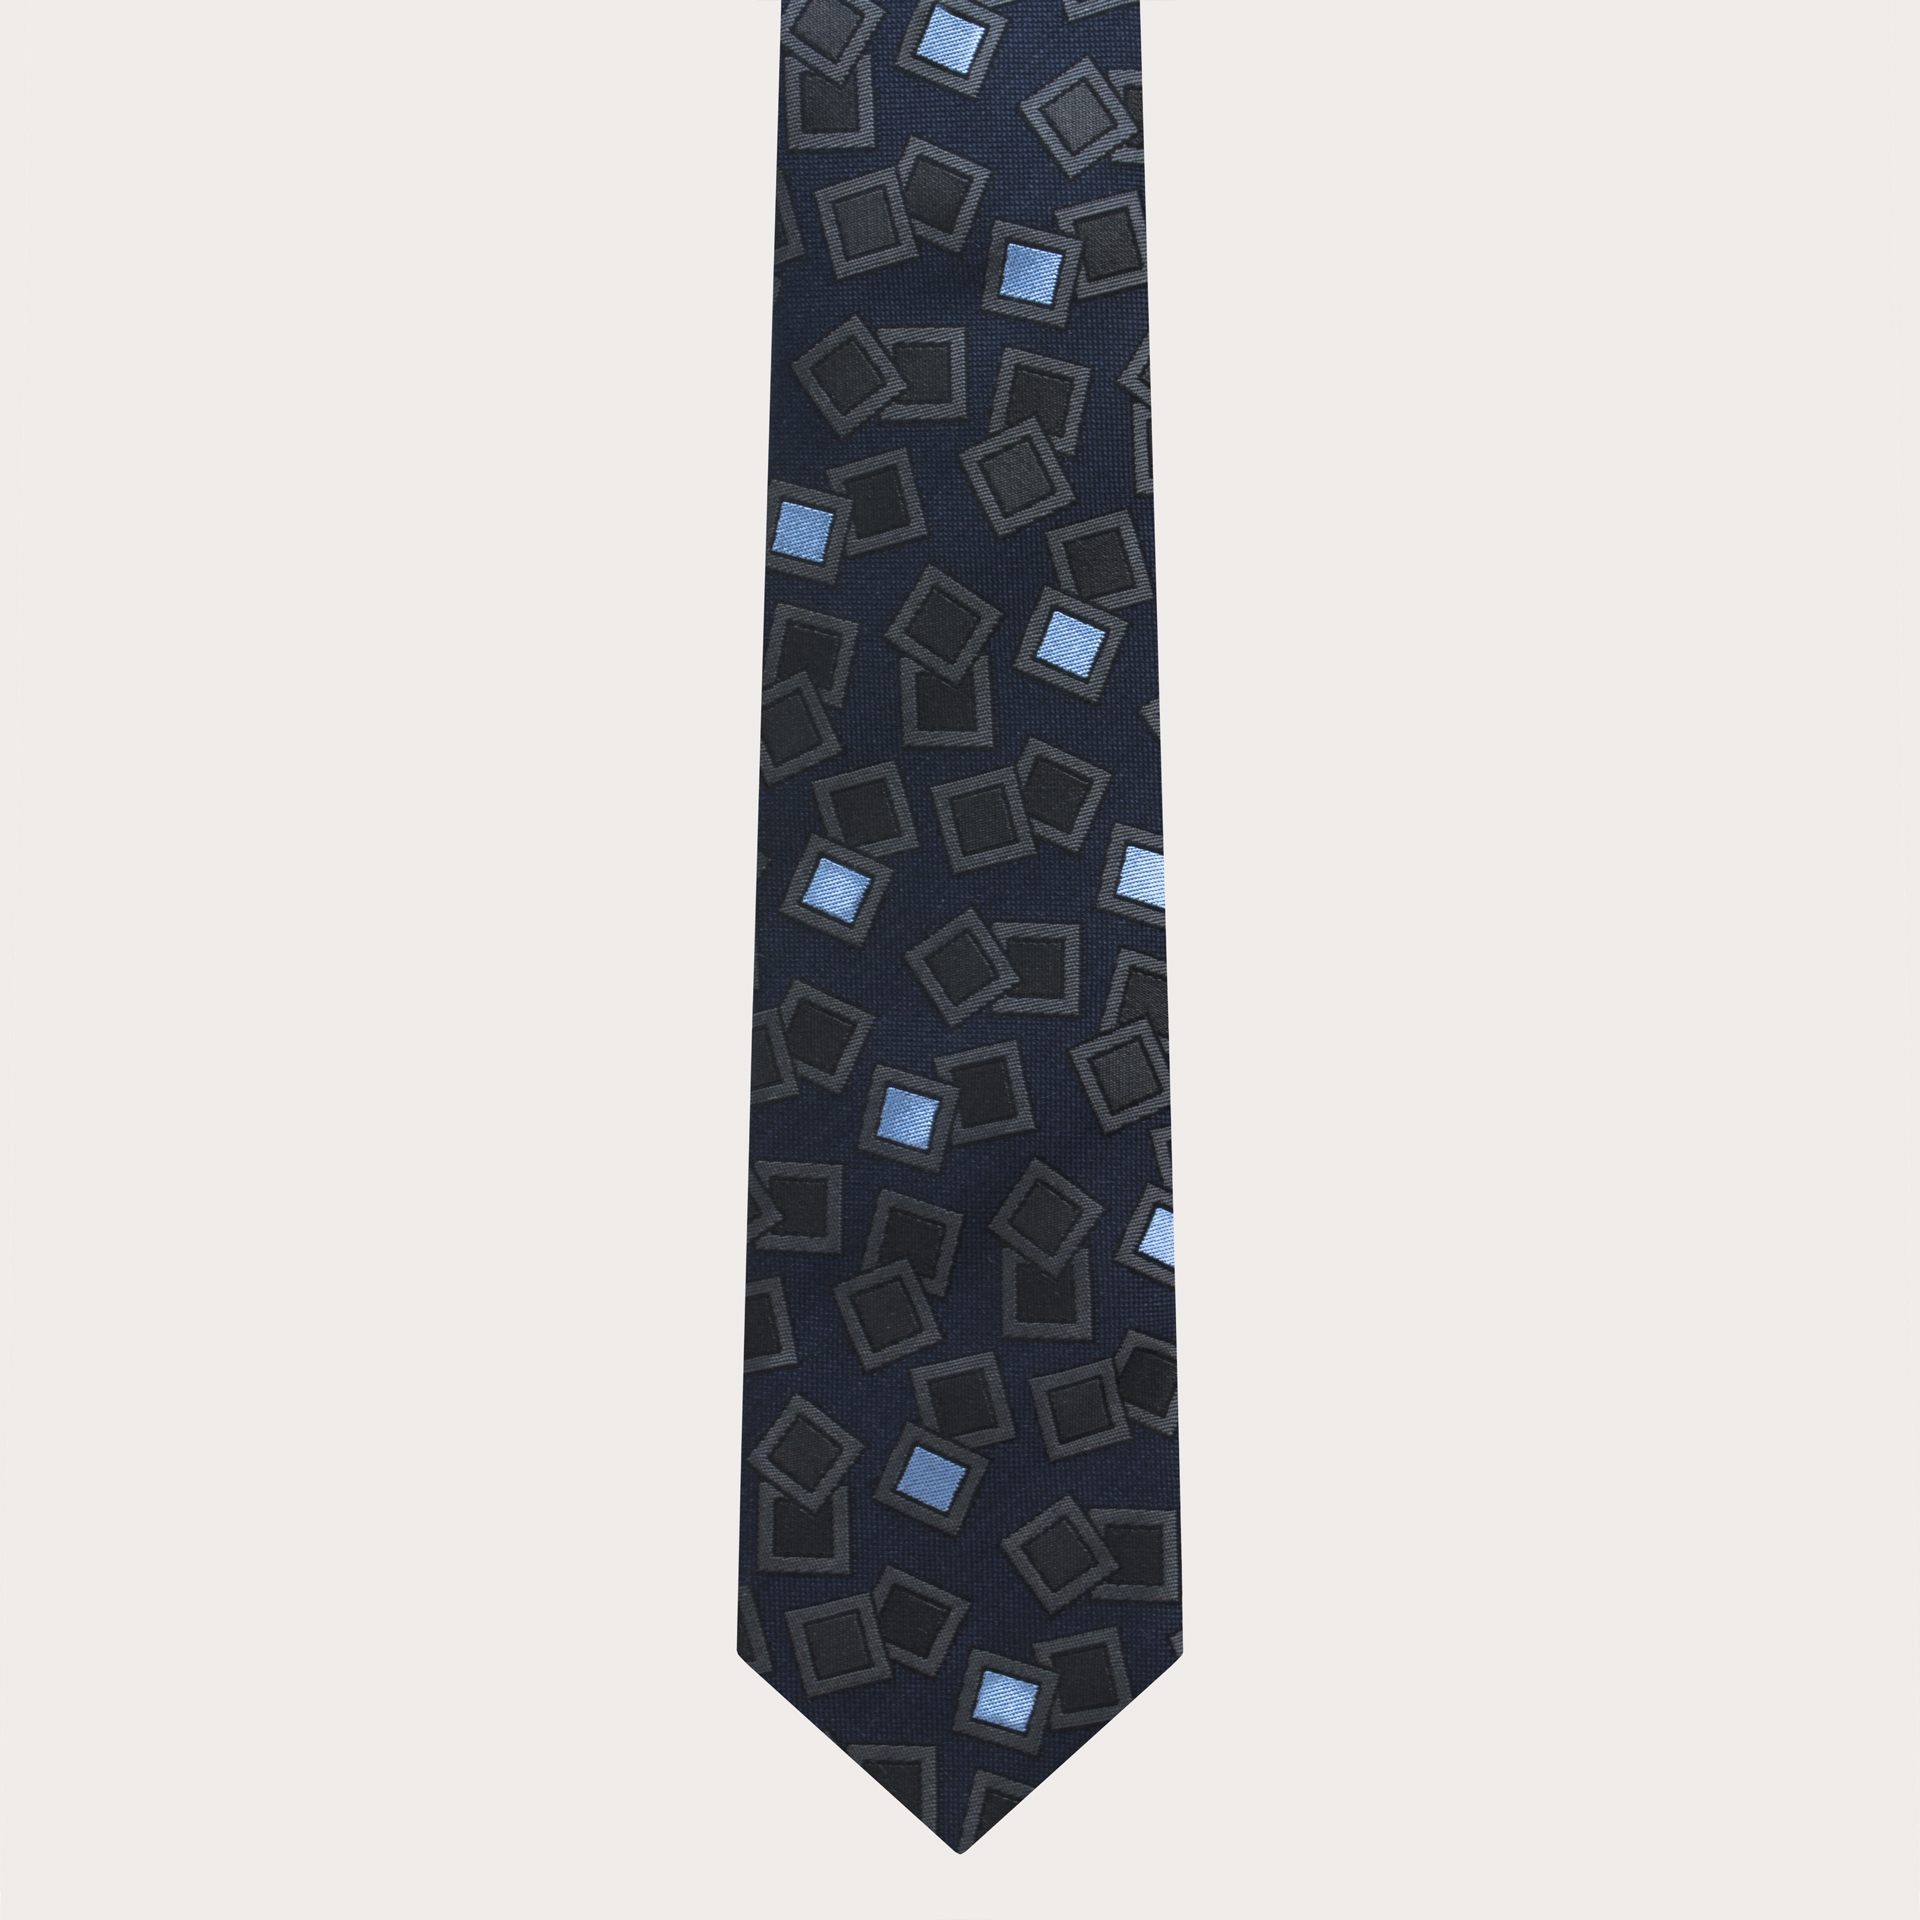 Cravatta in seta jacquard, blu navy con pattern antracite e azzurro